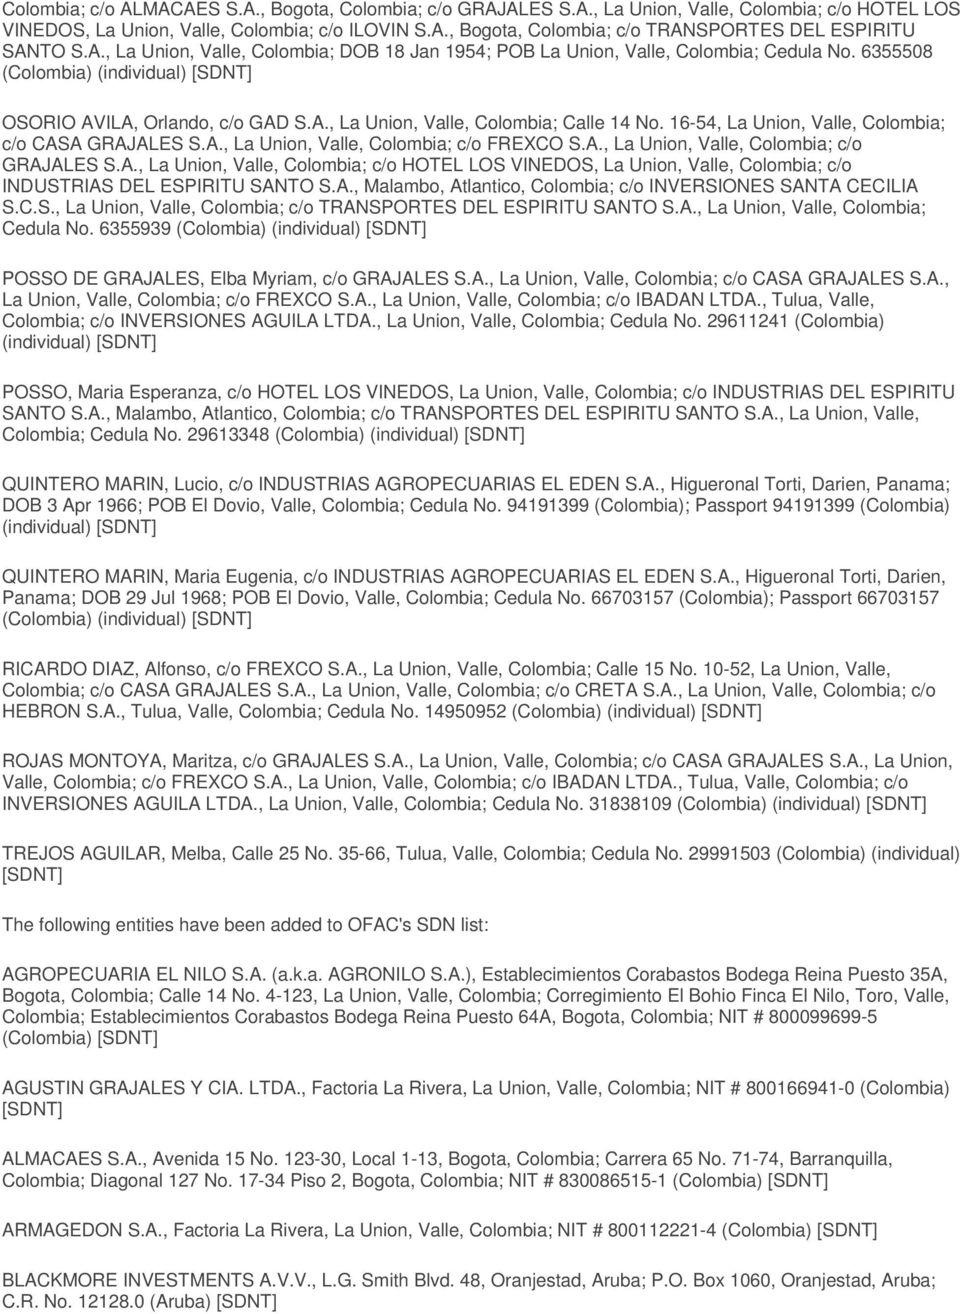 16-54, La Union, Valle, Colombia; c/o CASA GRAJALES S.A., La Union, Valle, Colombia; c/o FREXCO S.A., La Union, Valle, Colombia; c/o GRAJALES S.A., La Union, Valle, Colombia; c/o HOTEL LOS VINEDOS, La Union, Valle, Colombia; c/o INDUSTRIAS DEL ESPIRITU SANTO S.